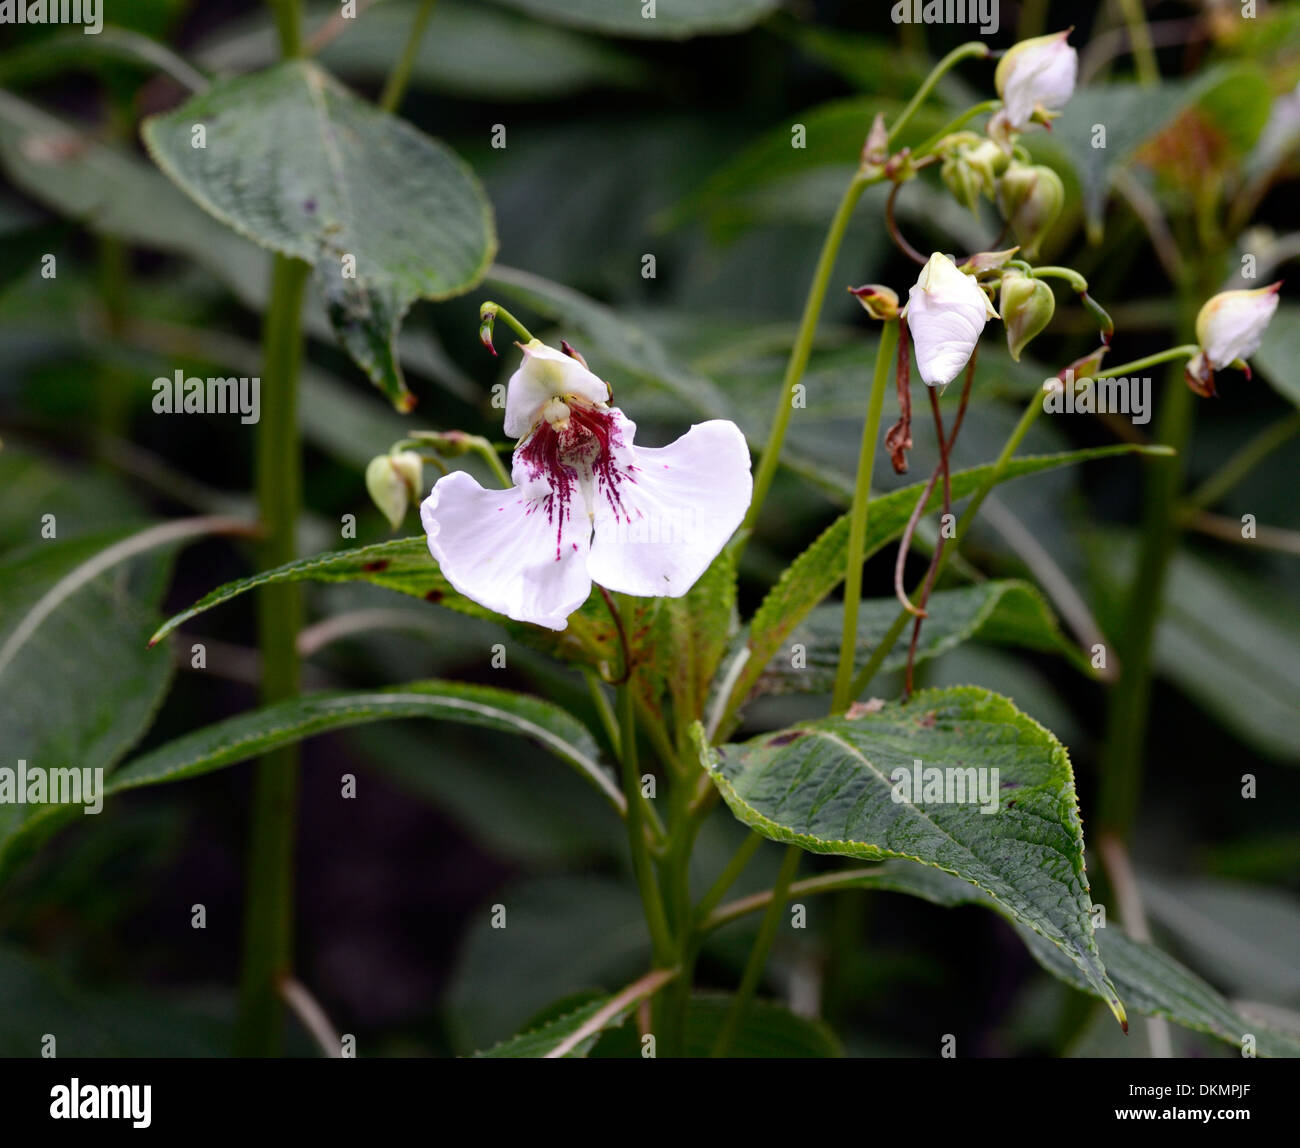 Impatiens tinctoria fleurs blanches parfumées d'été plantes parfumées floraison vivace tropicale fleurs portraits Banque D'Images